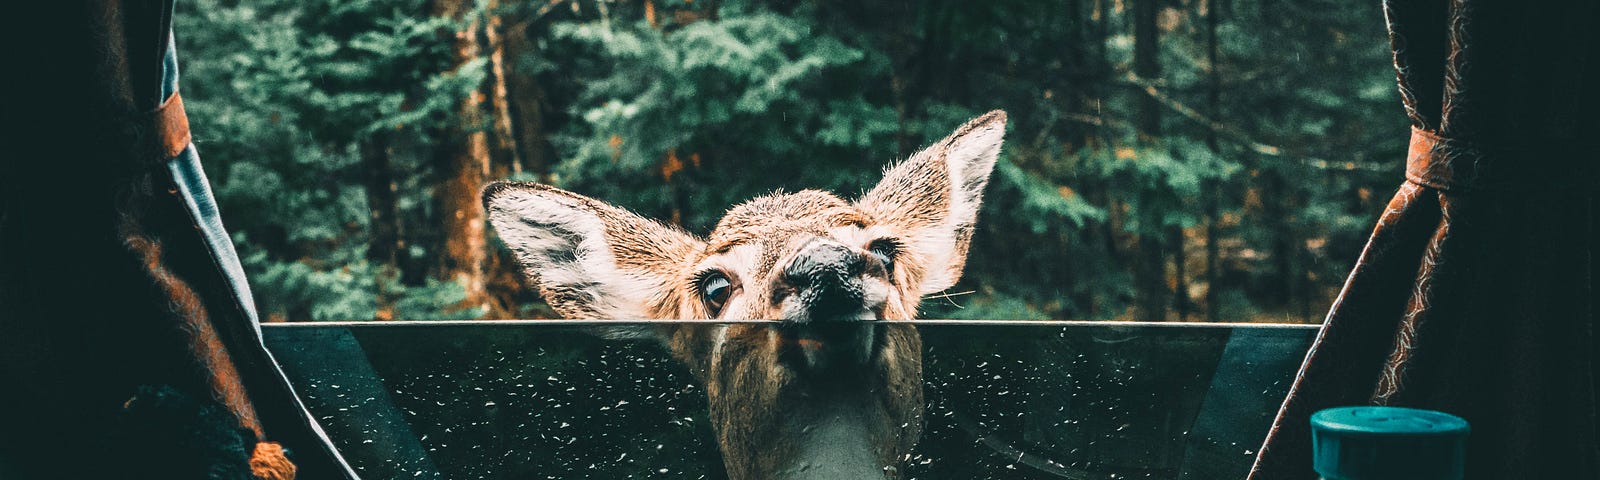 Deer peeking through camper window.